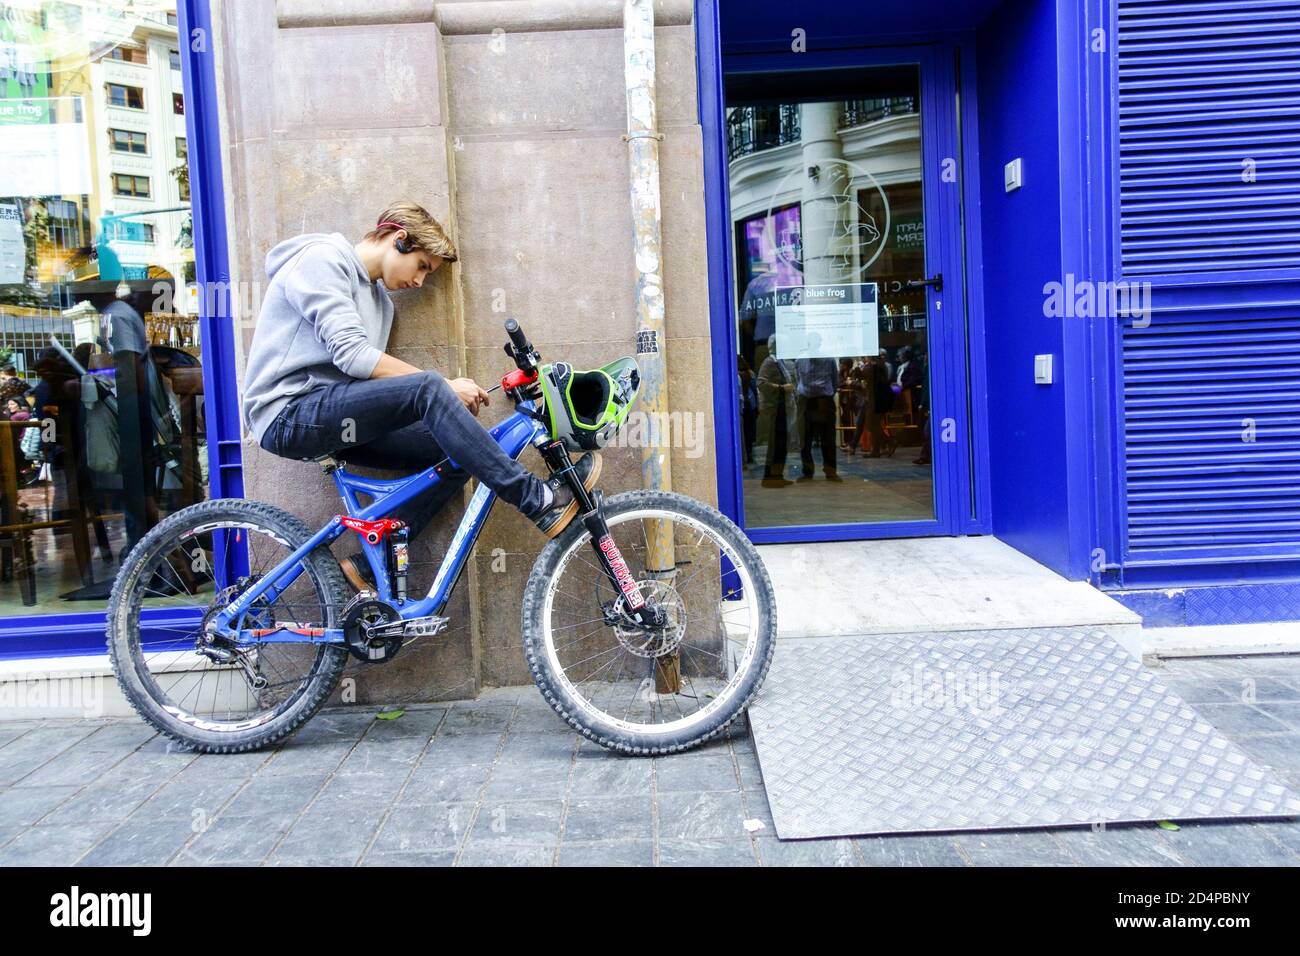 Spanien Teenager allein mit einem Telefon auf dem Fahrrad Lifestyle Valencia Spanien Lifestyle junger Teenager Teen über das Mobilfunknetz Stockfoto